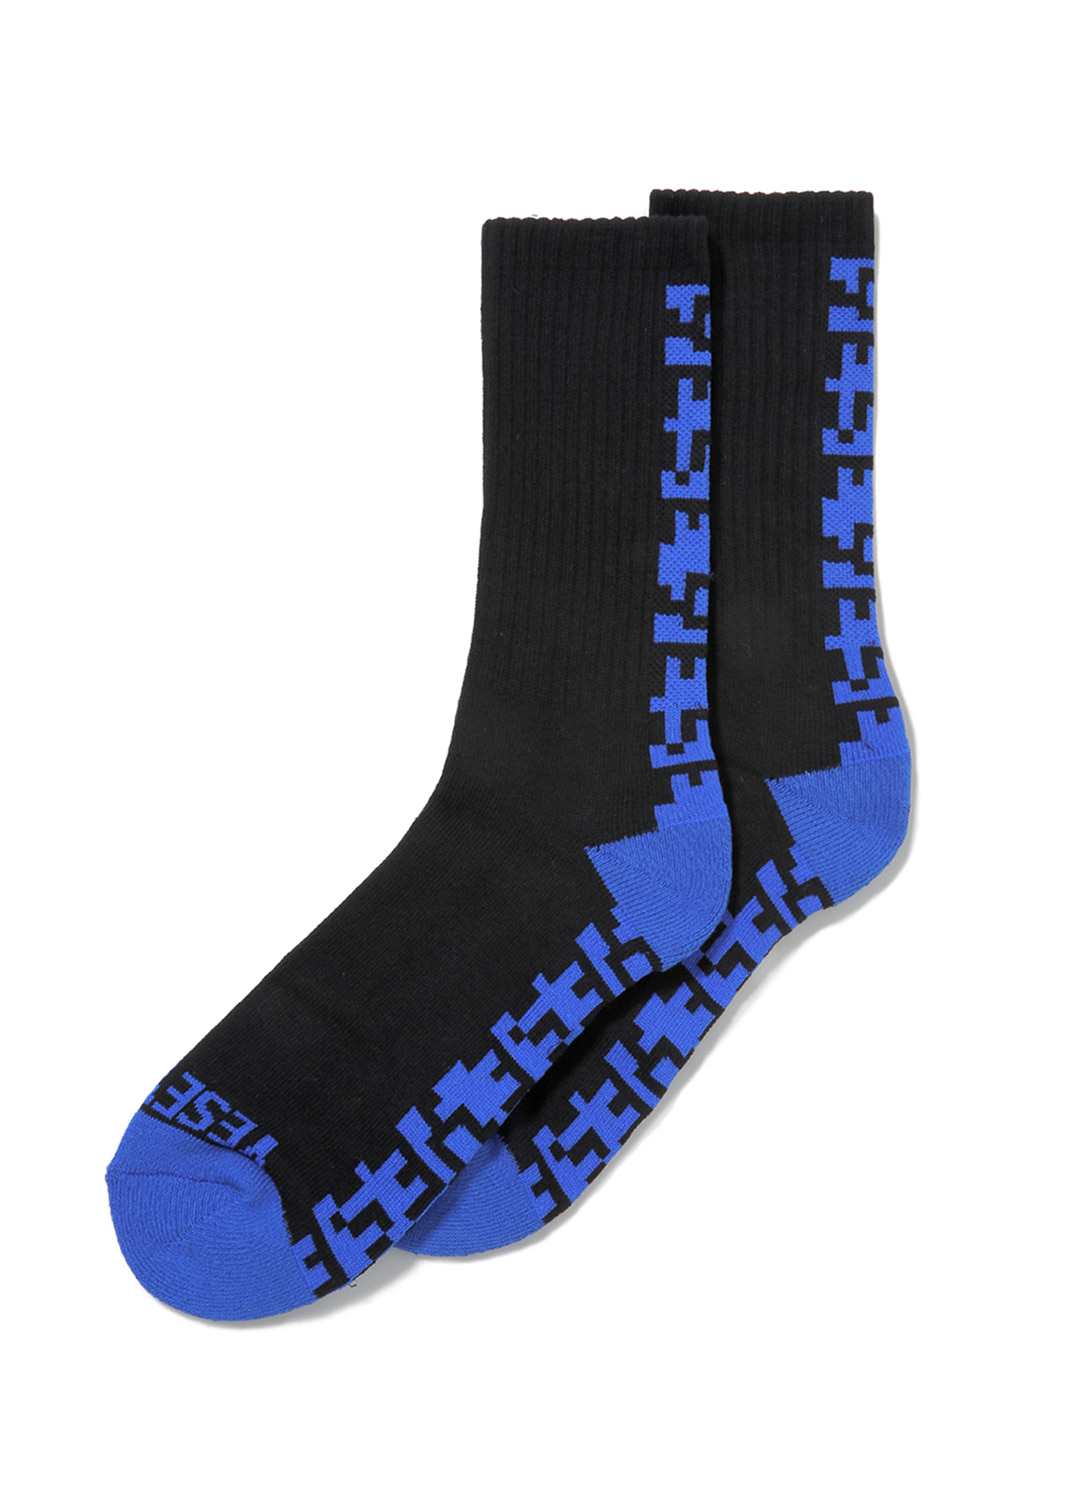 Y.E.S Line Socks Black